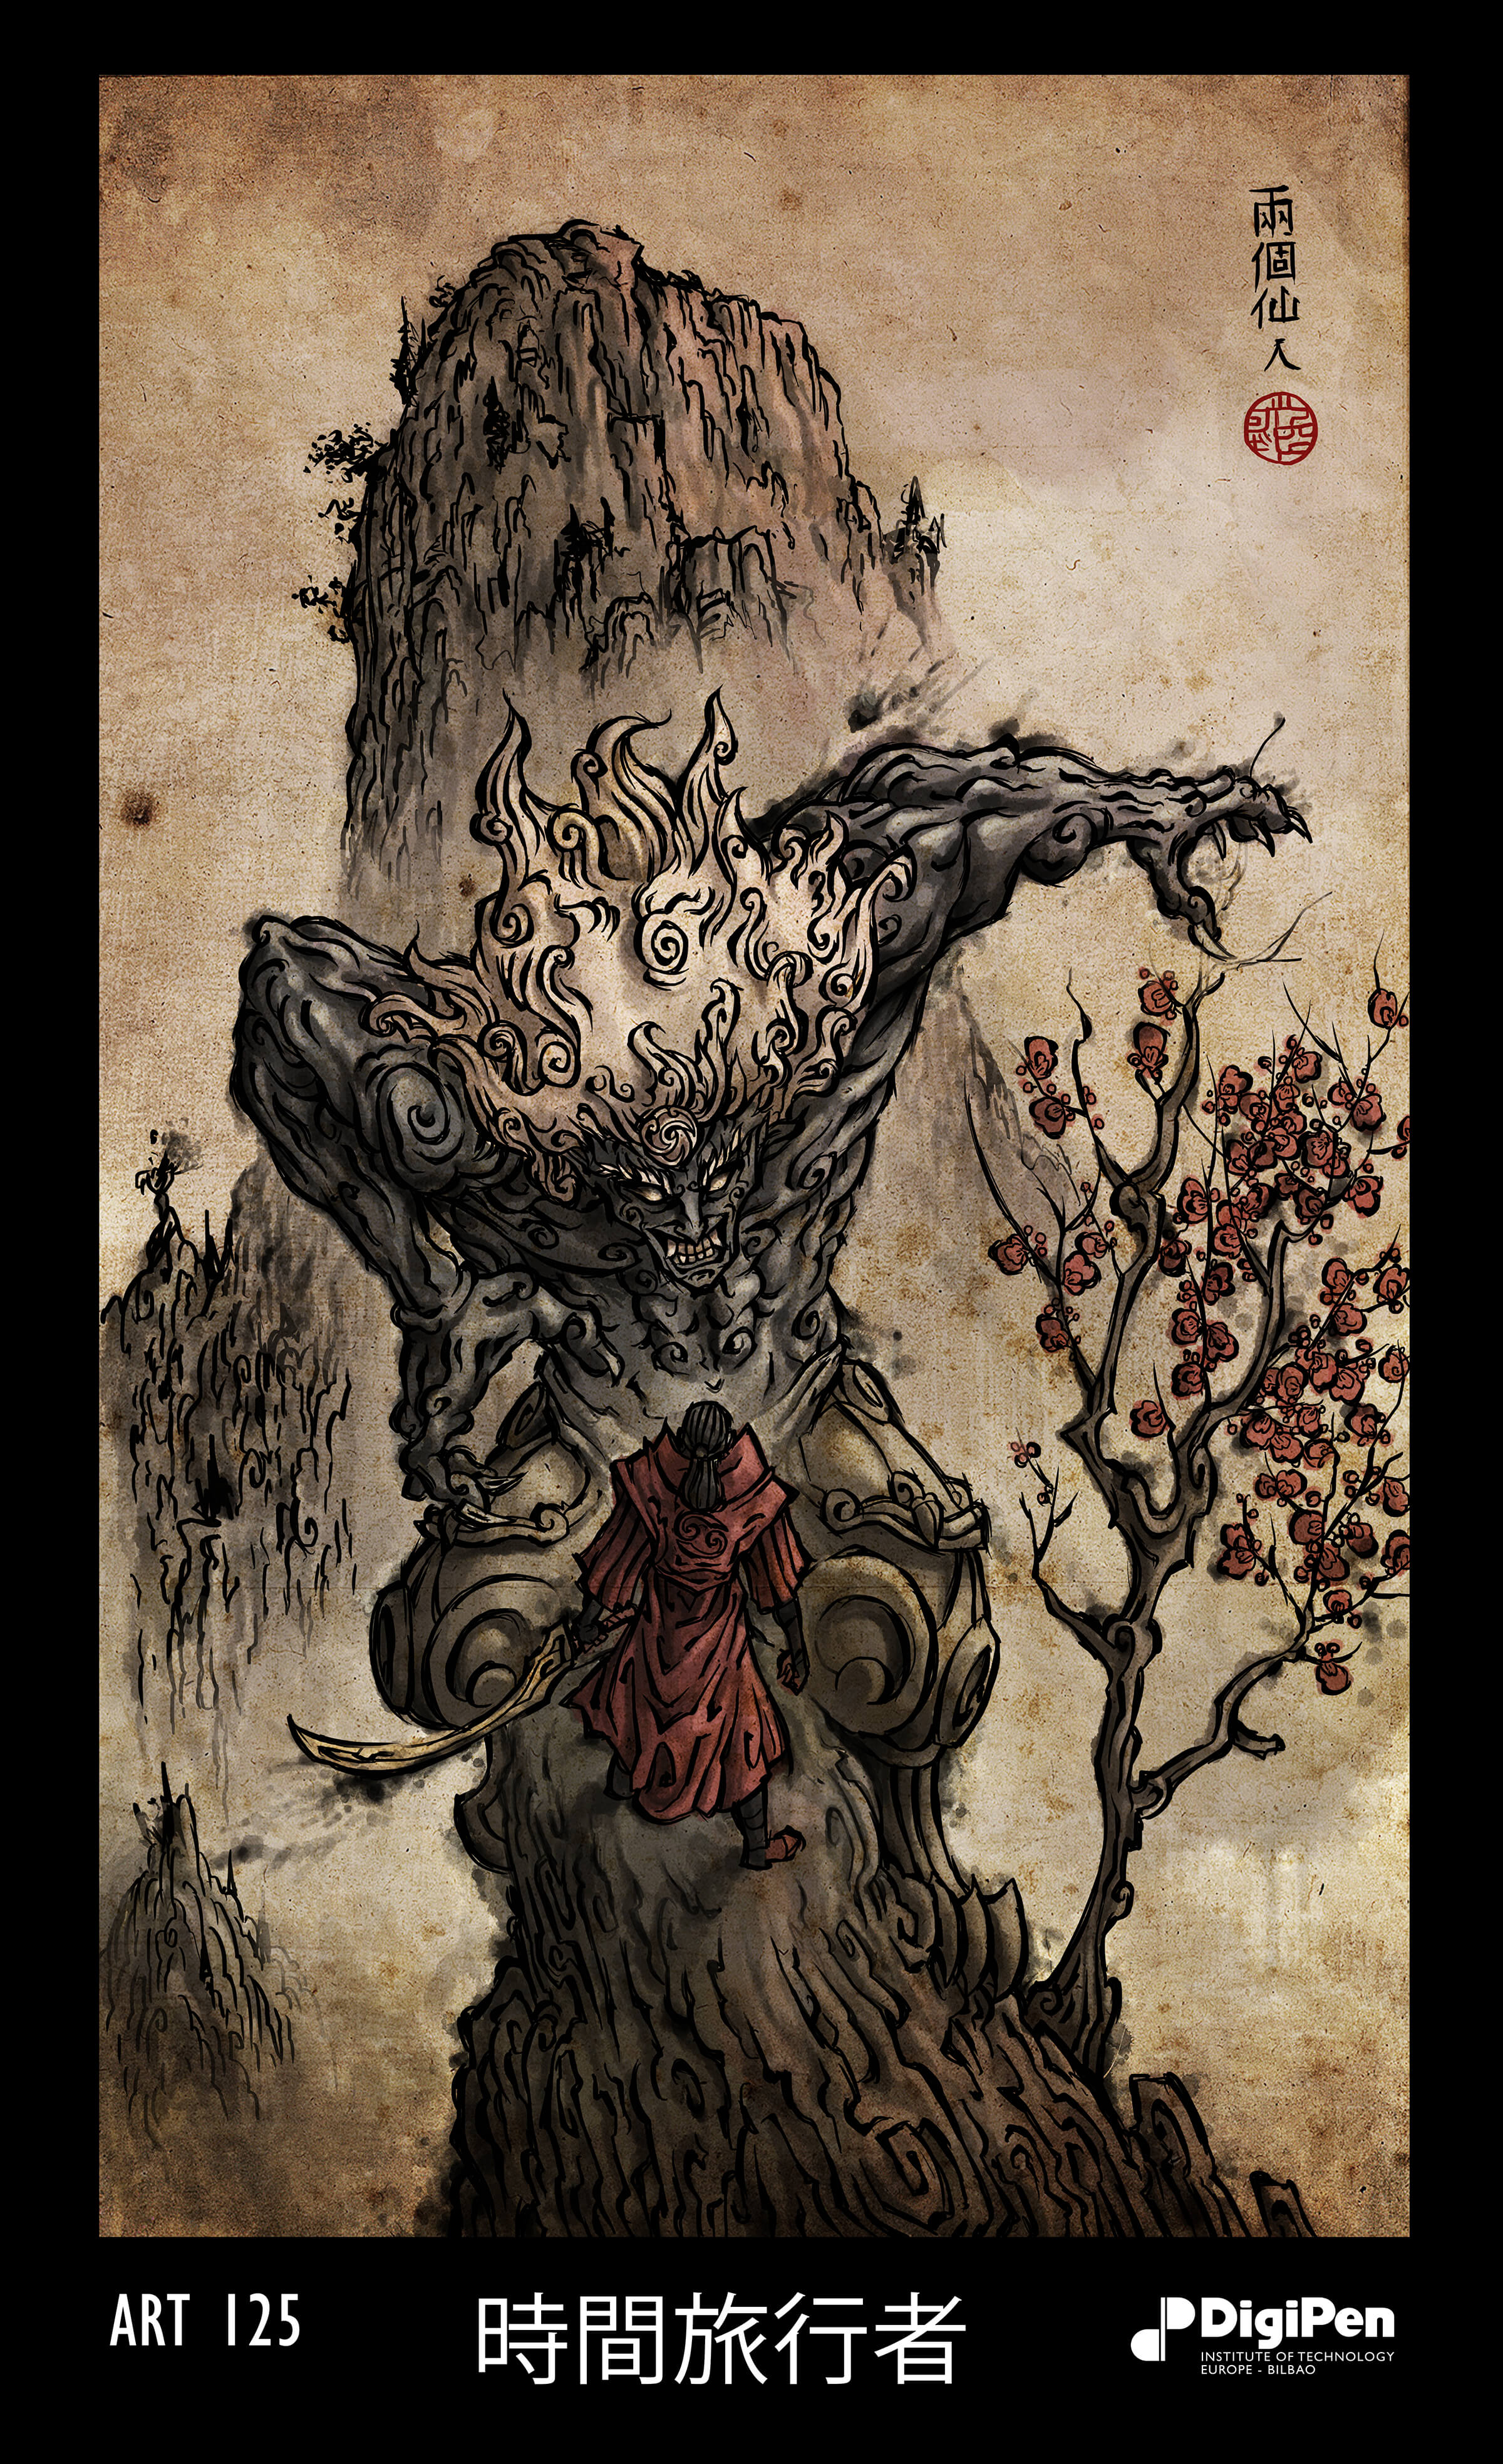 Arte al estilo de un bloque de madera que representa a un demonio de pelo blanco sobre una figura vestida de rojo que sostiene una espada en la cima de una montaña.